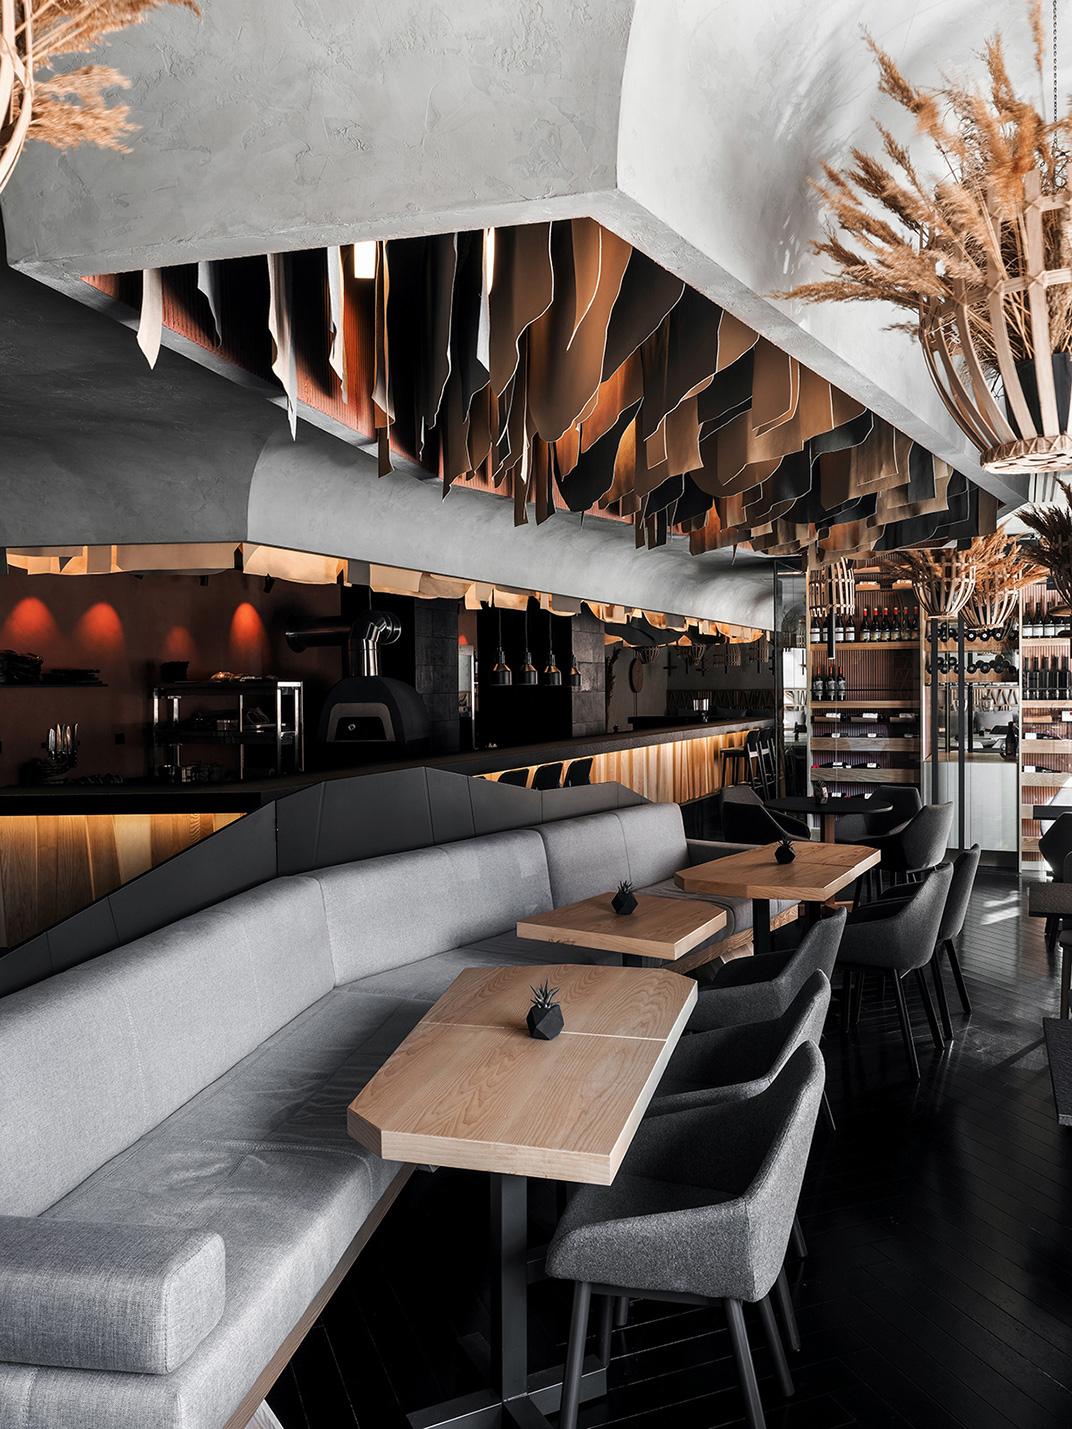 狩猎餐厅HUNT restaurant 俄罗斯 混凝土 皮革 木料 现代建筑 logo设计 vi设计 空间设计